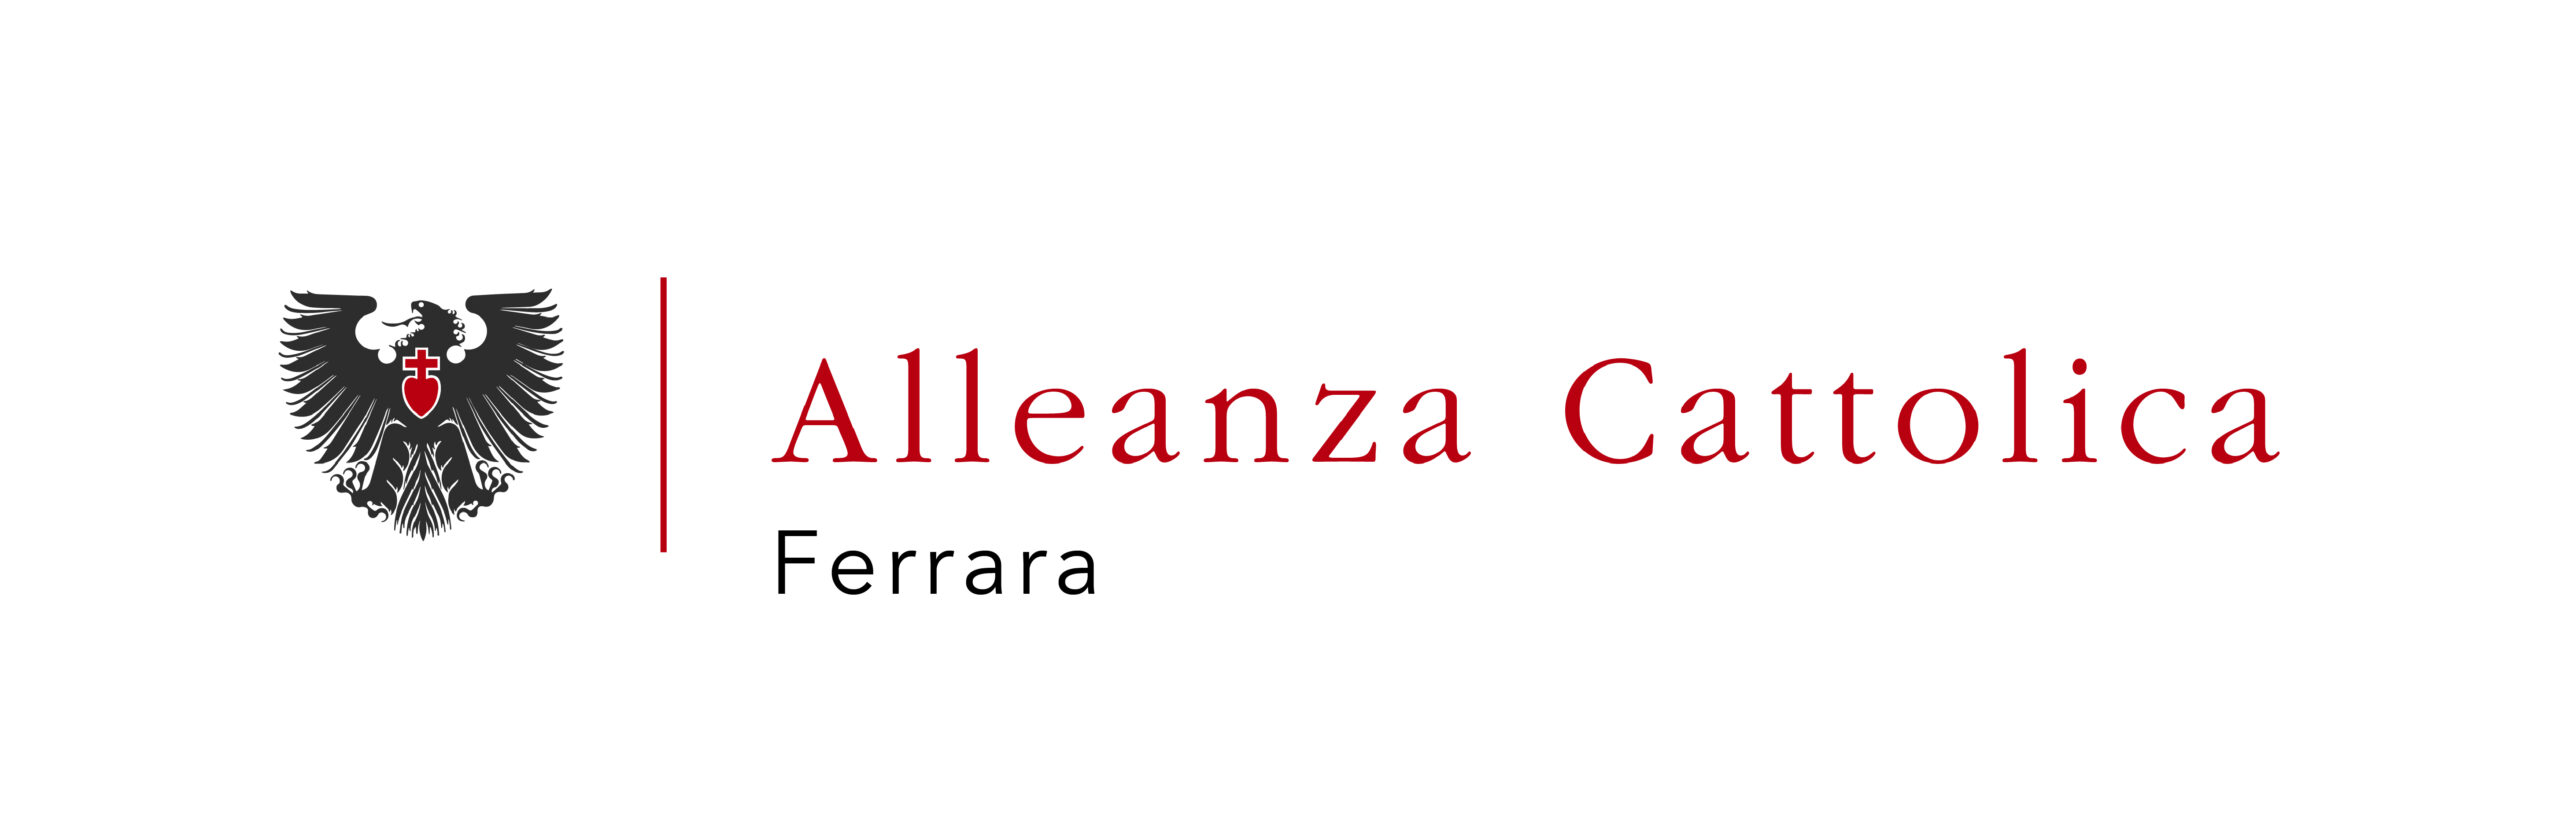 Logo sul piè di pagina: Alleanza Cattolica in Ferrara